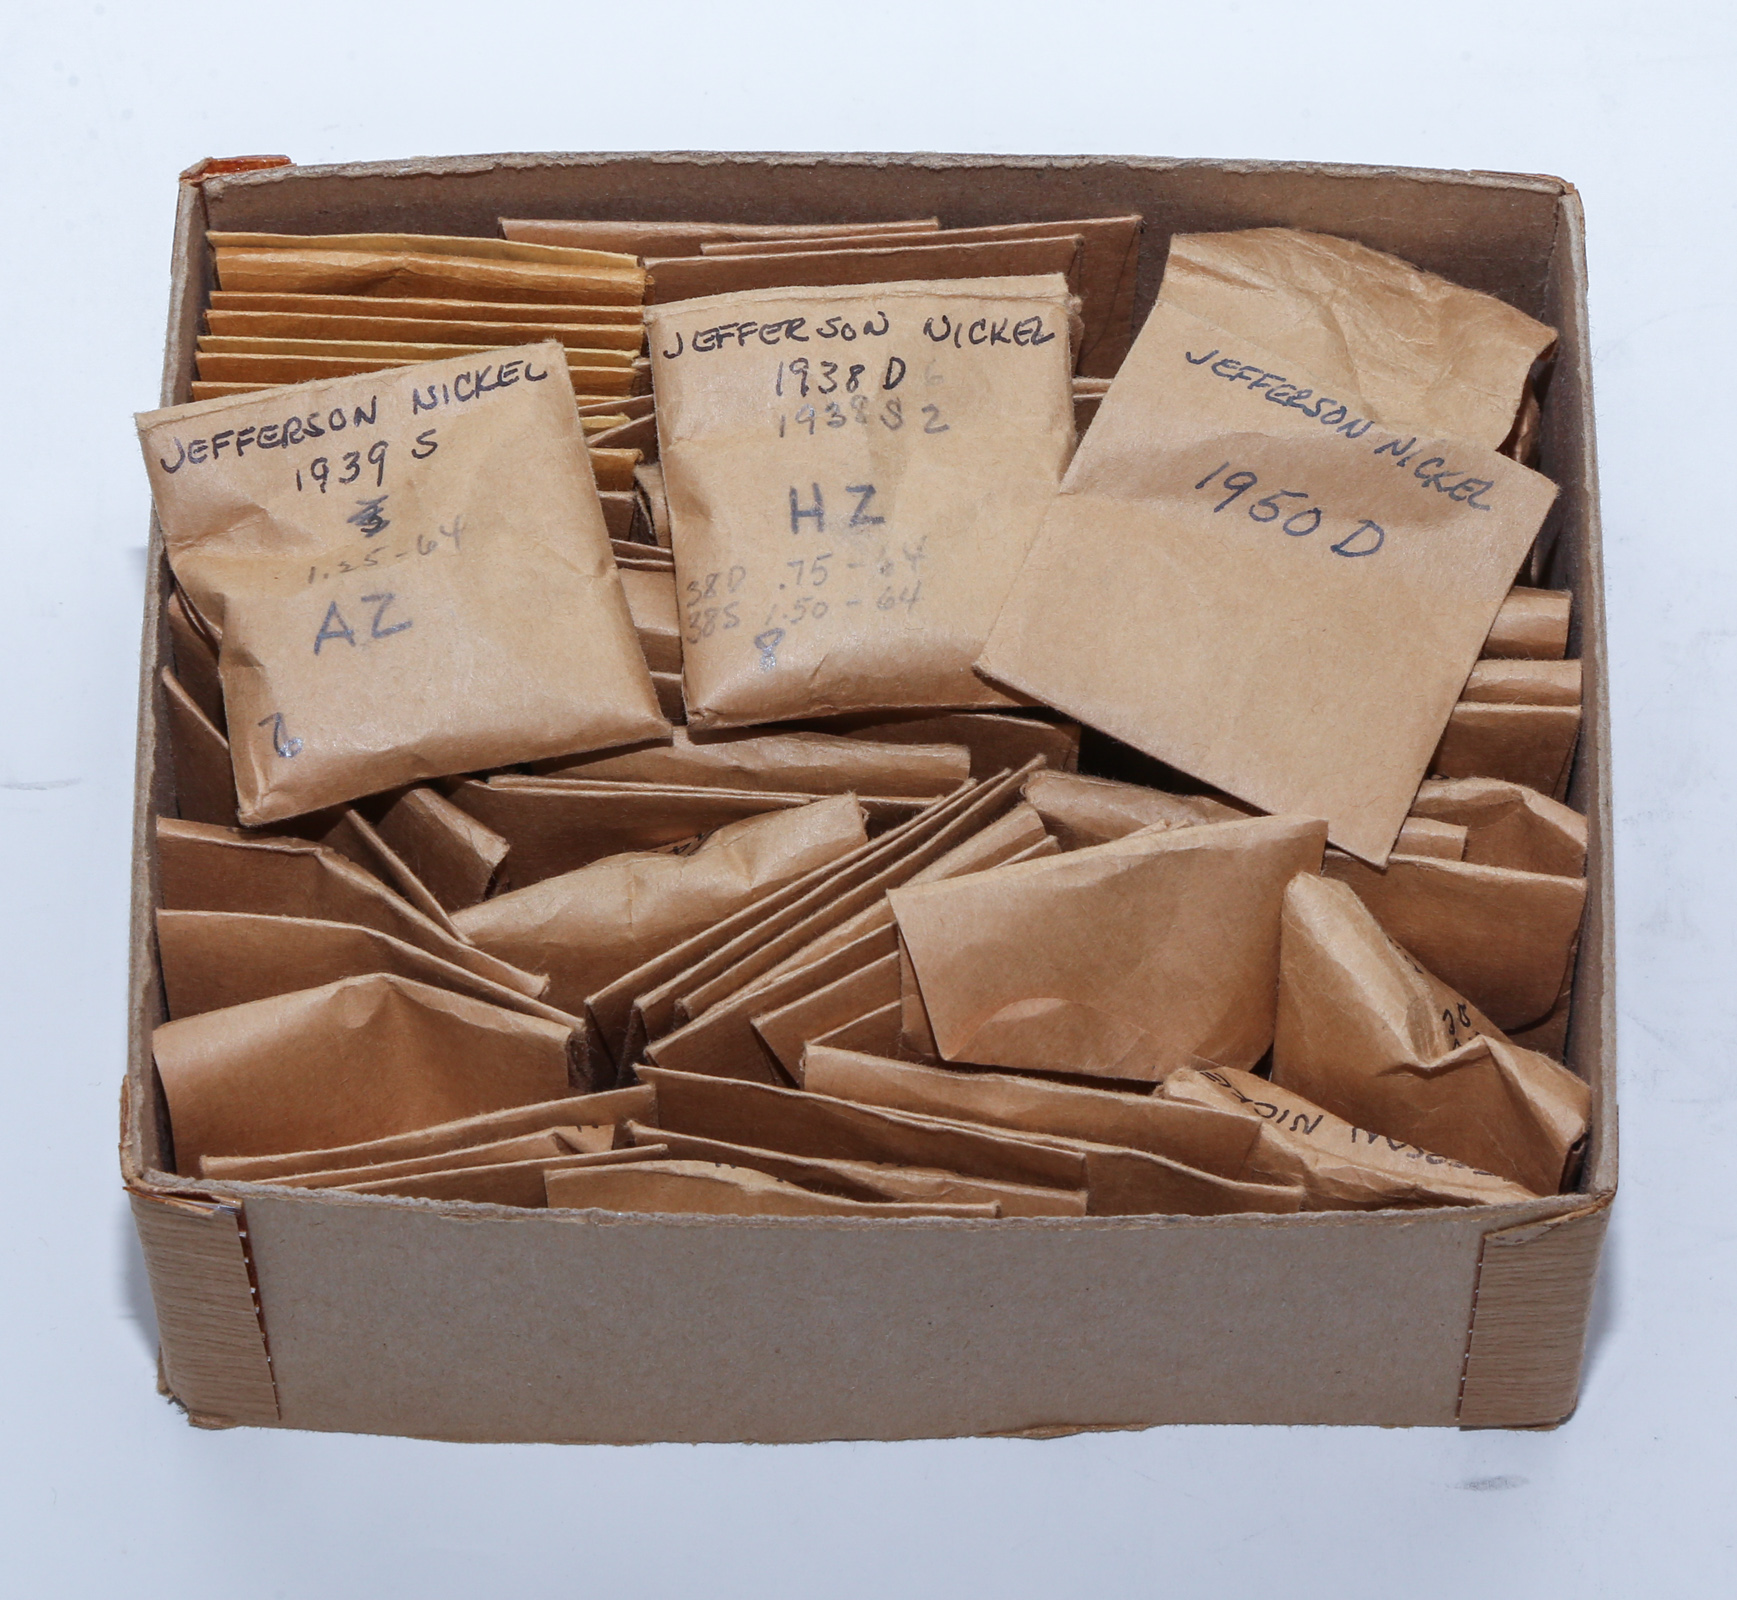 BOX OF 70 PACKS OF NICKELS 1938 1971 3b253b